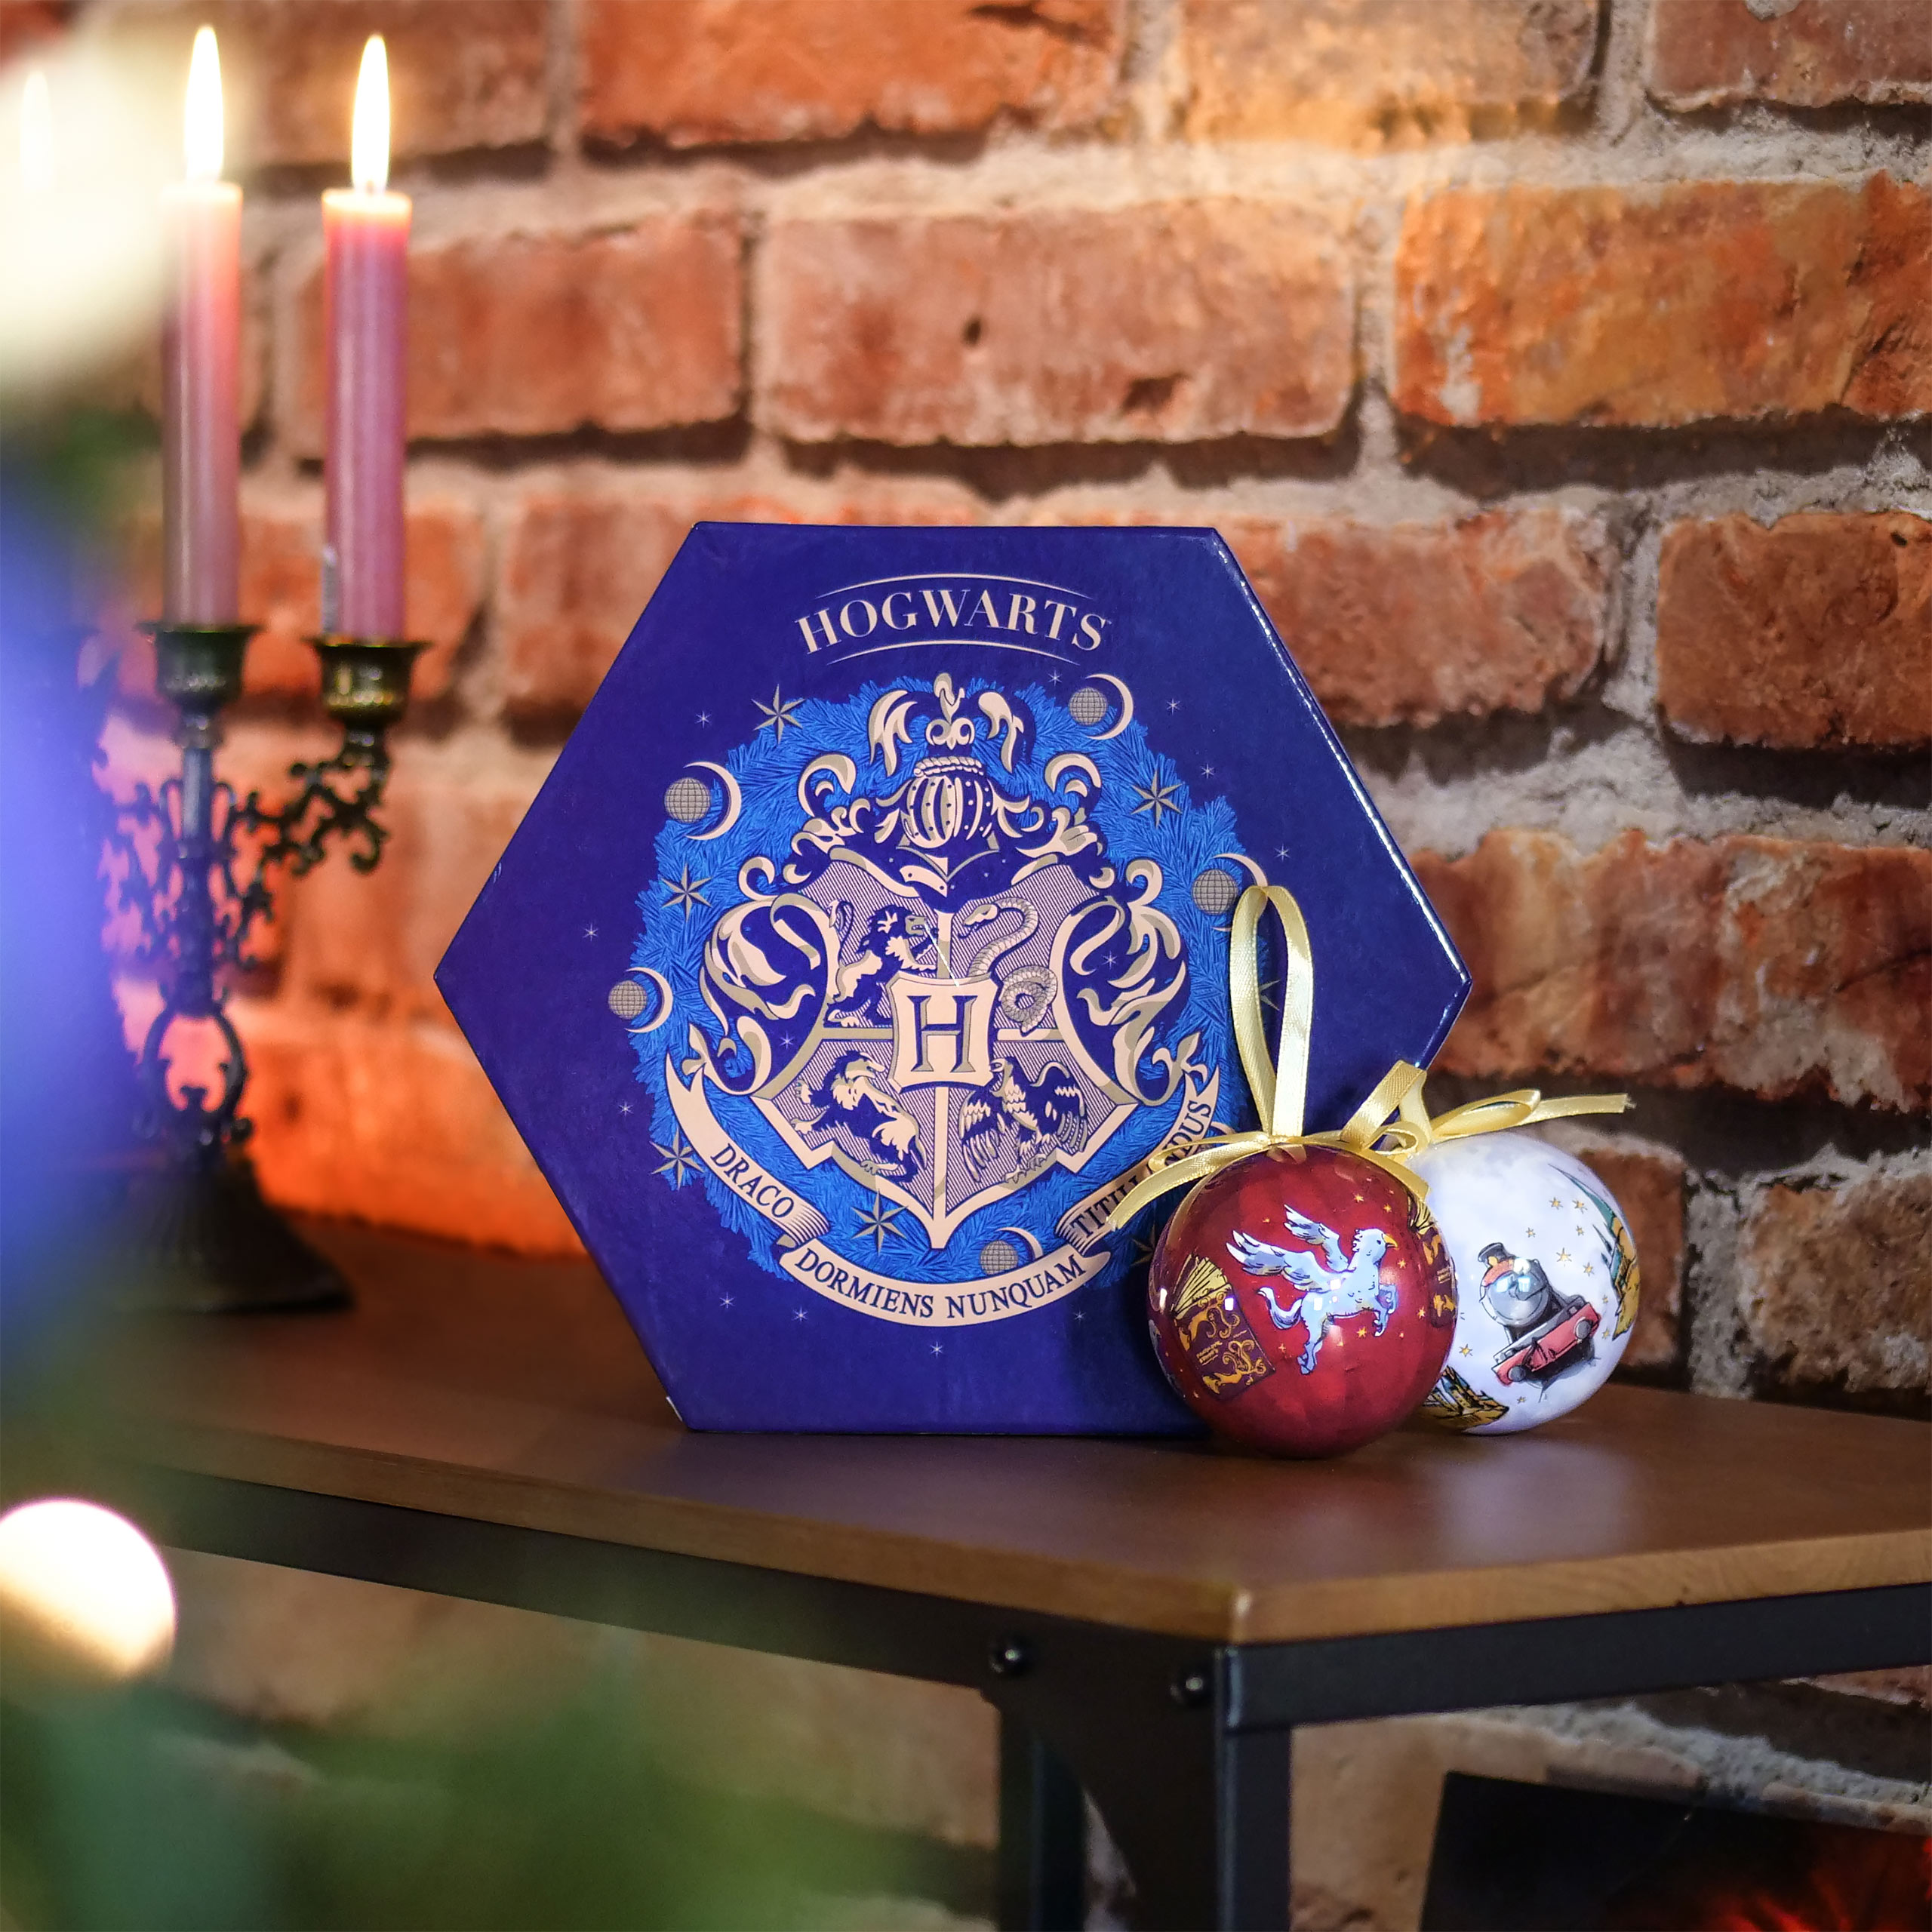 Wizarding World Weihnachtsbaumkugeln 14tlg - Harry Potter